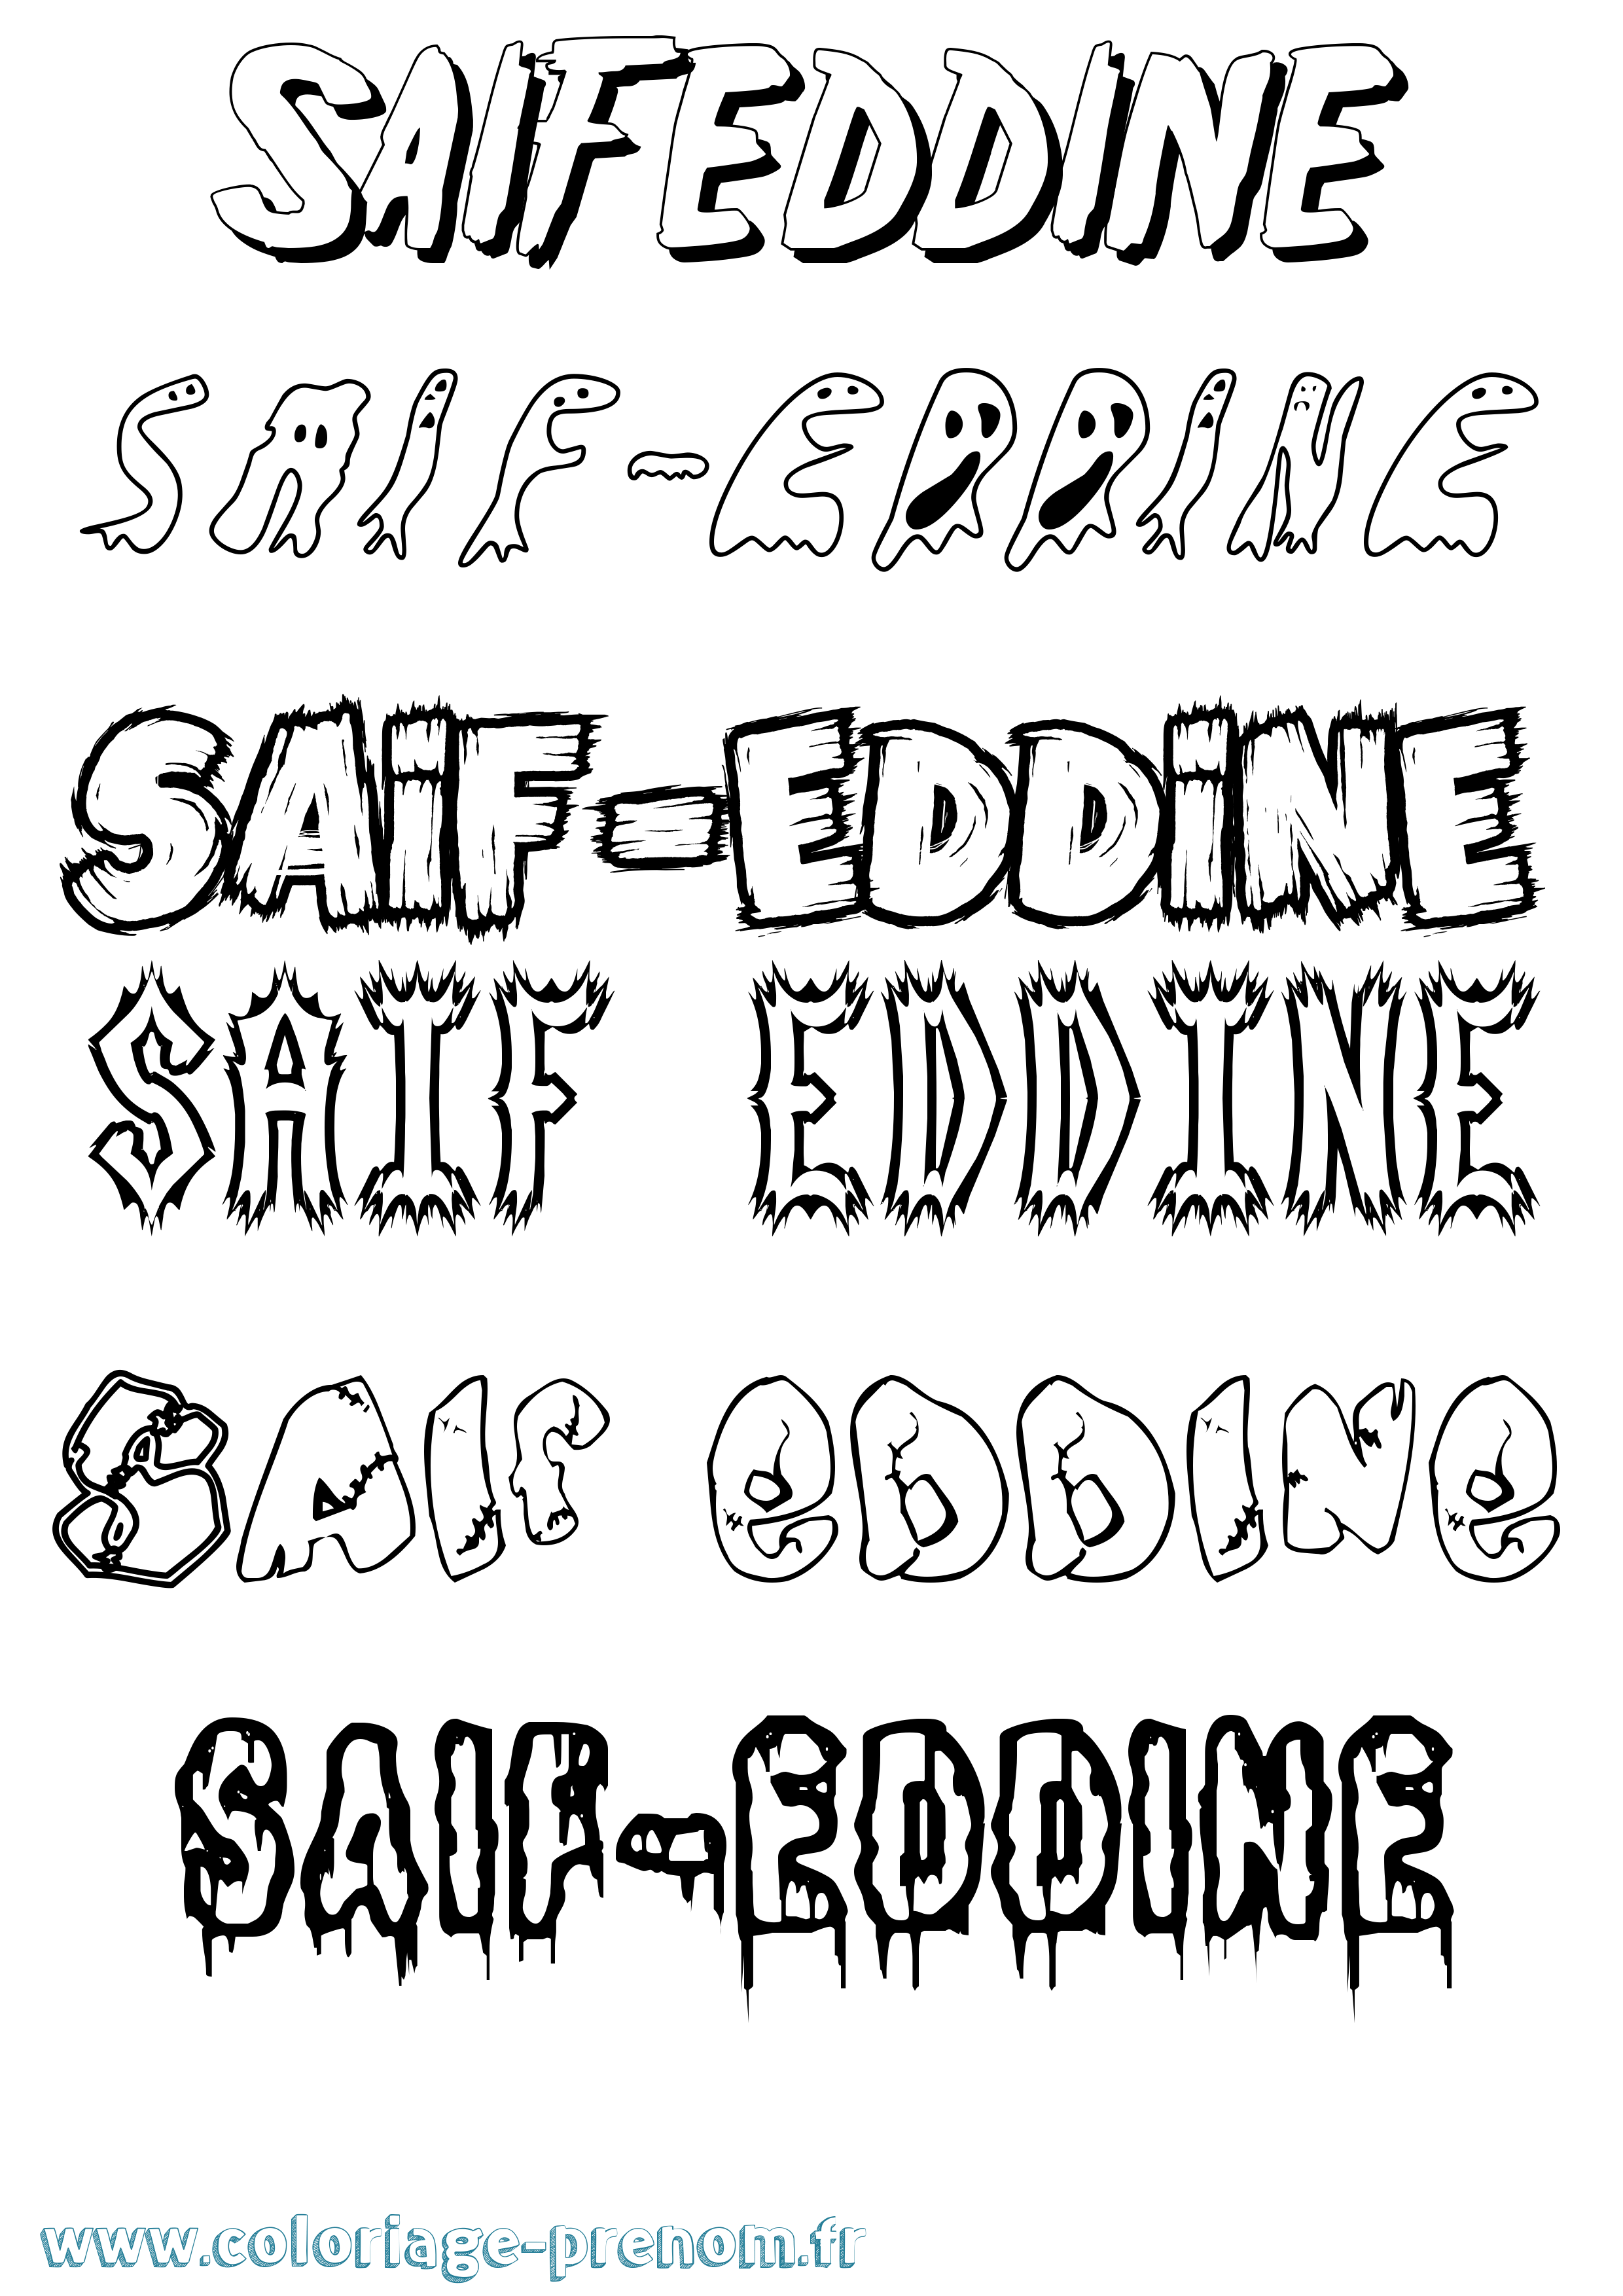 Coloriage prénom Saif-Eddine Frisson